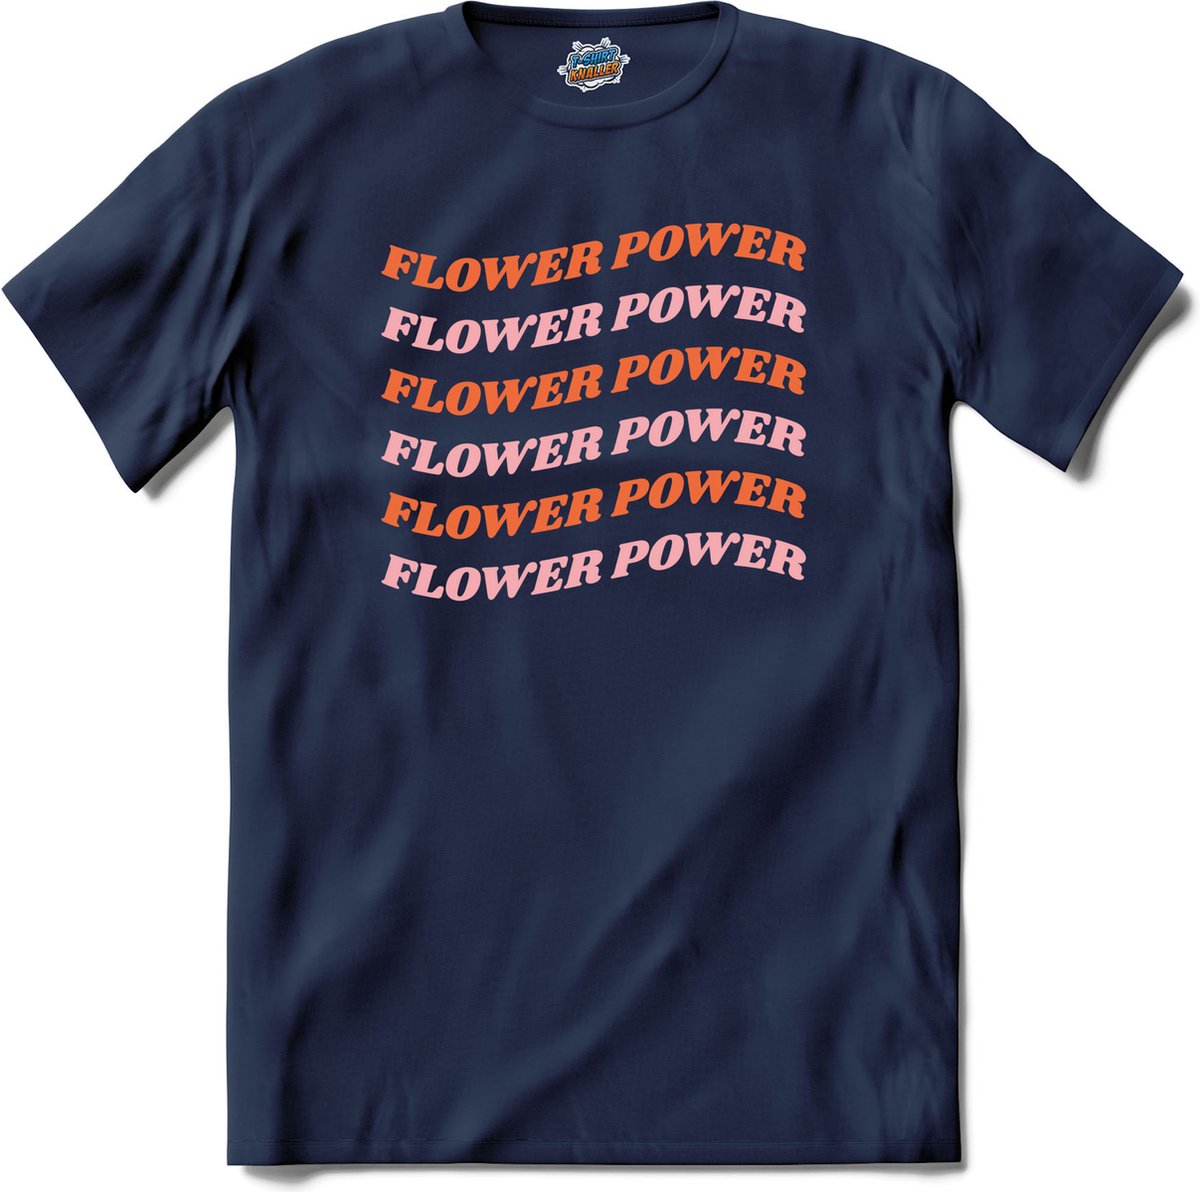 Flower power - T-Shirt - Jongens - Navy Blue - Maat 4 jaar